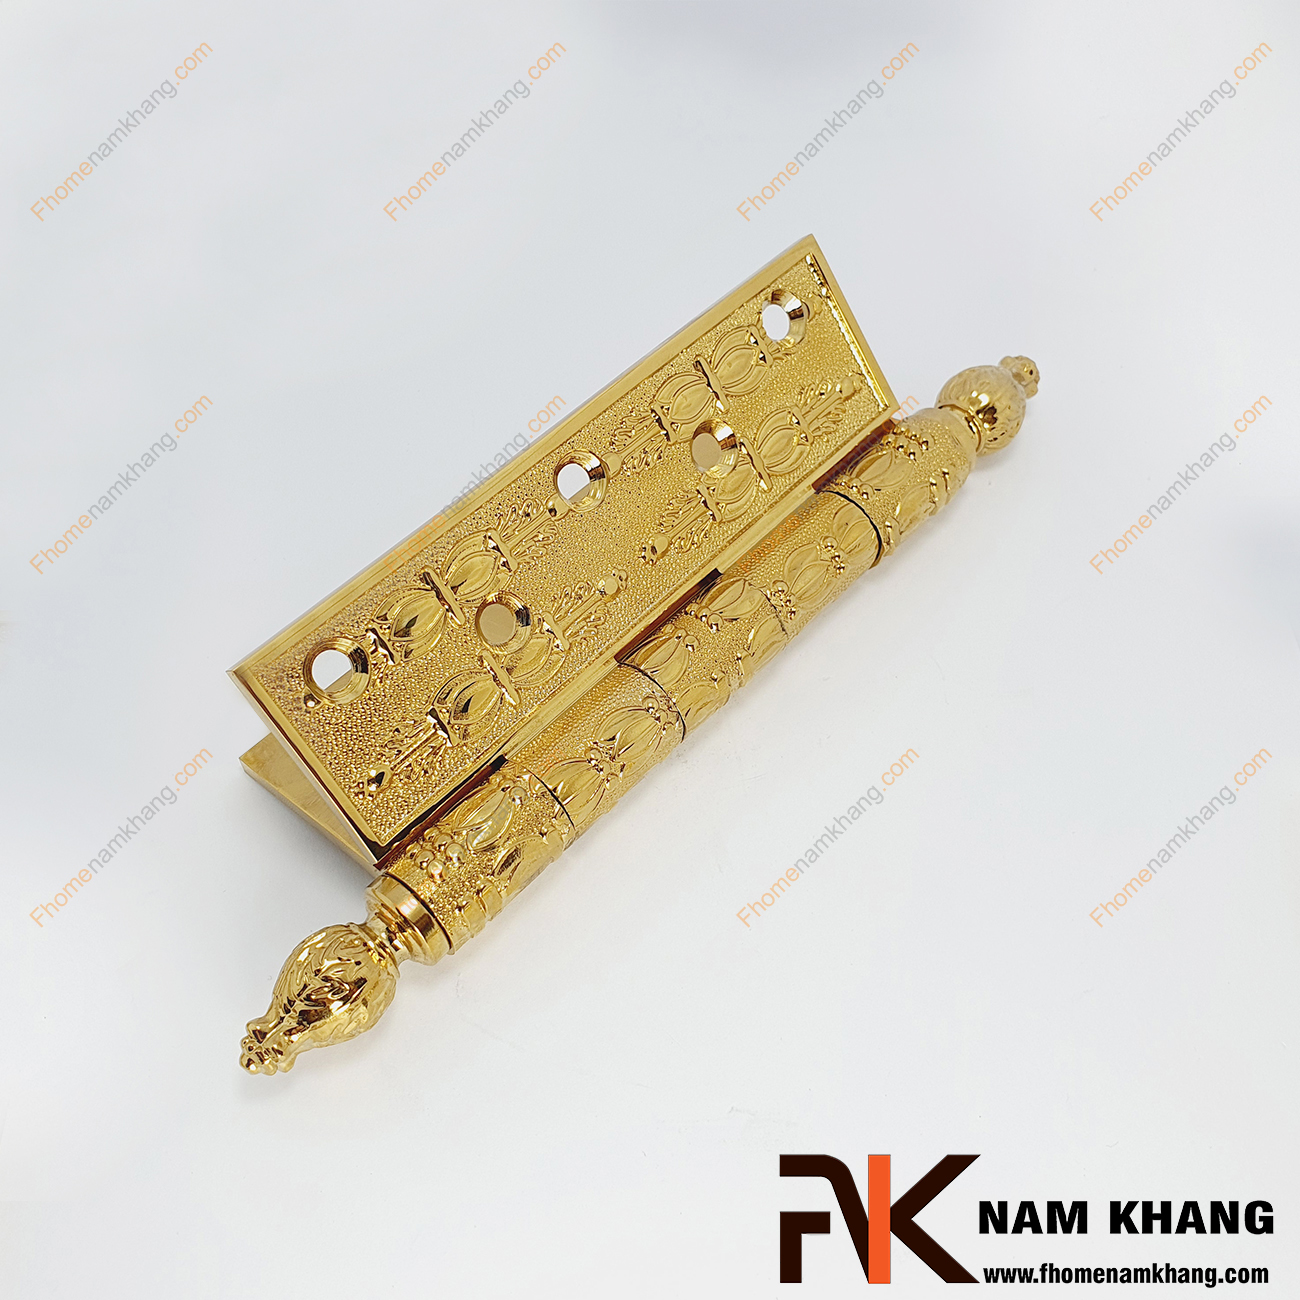 Bản lề lá dạng hoa văn màu vàng gold NK602-13DV được sản xuất từ đồng cao cấp, có độ dày 4mm cho kết cấu bền vững và độ bền rất cao.